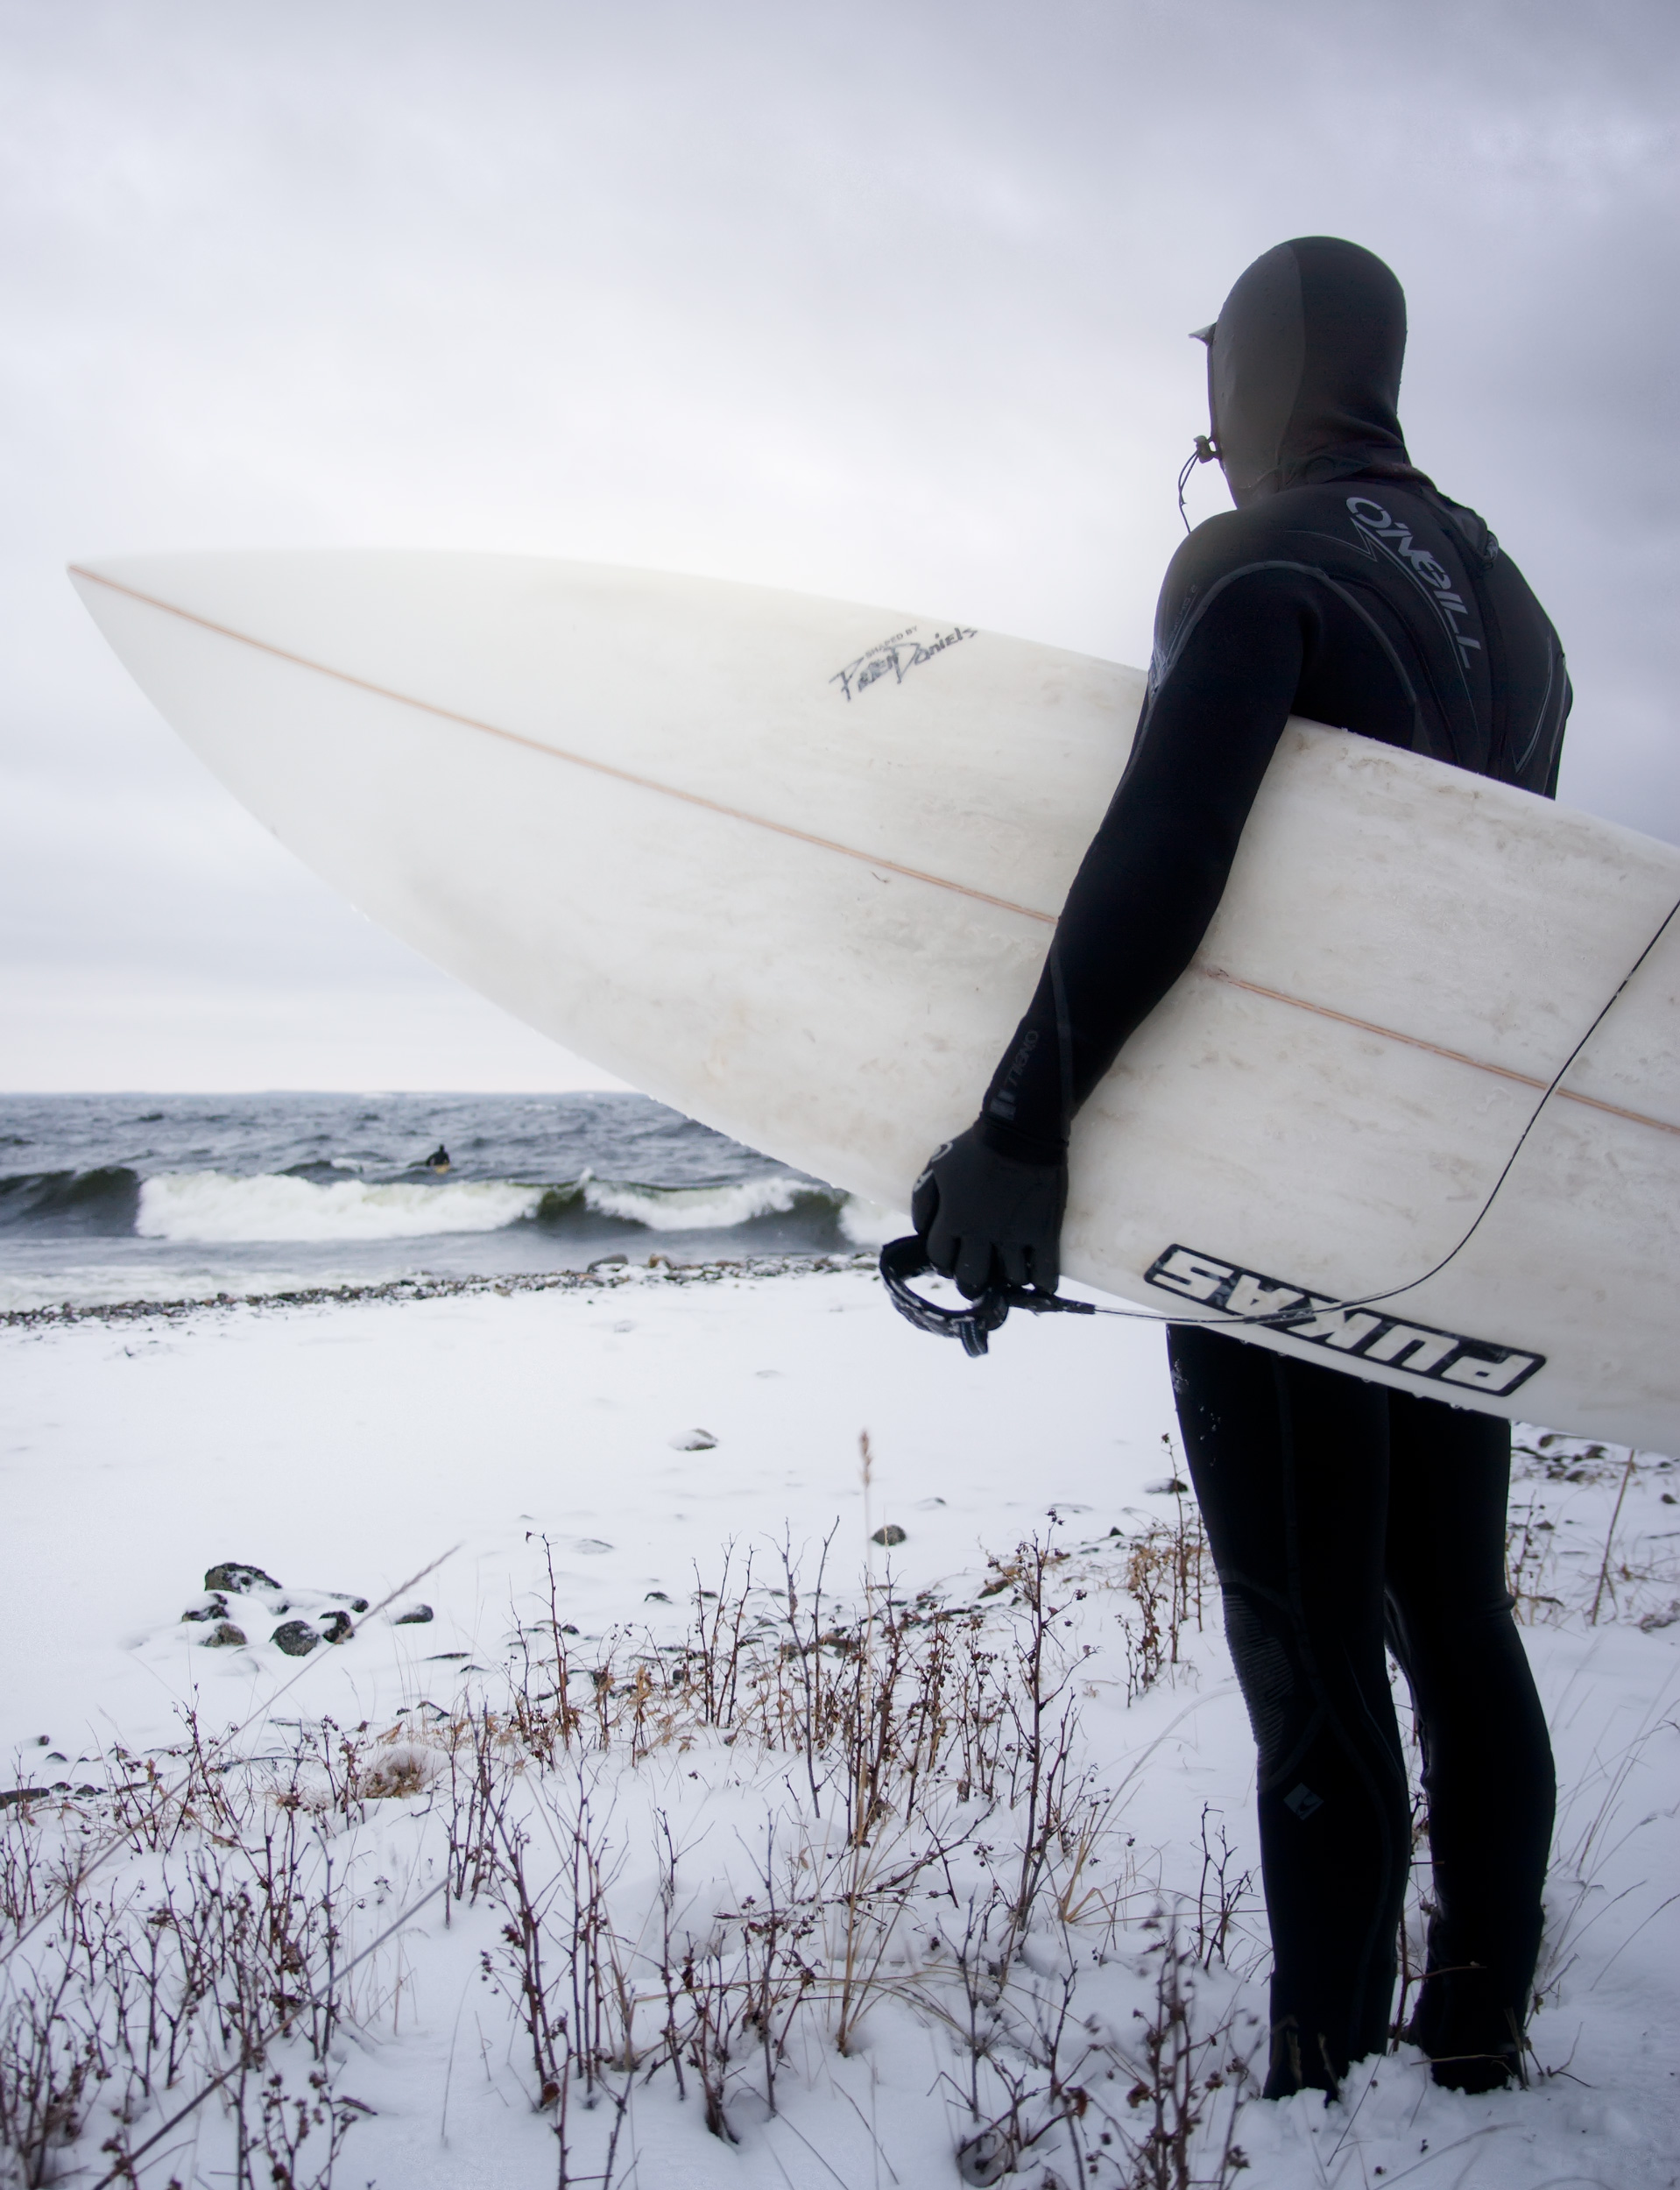 Arktisk surfing med snö på vintern